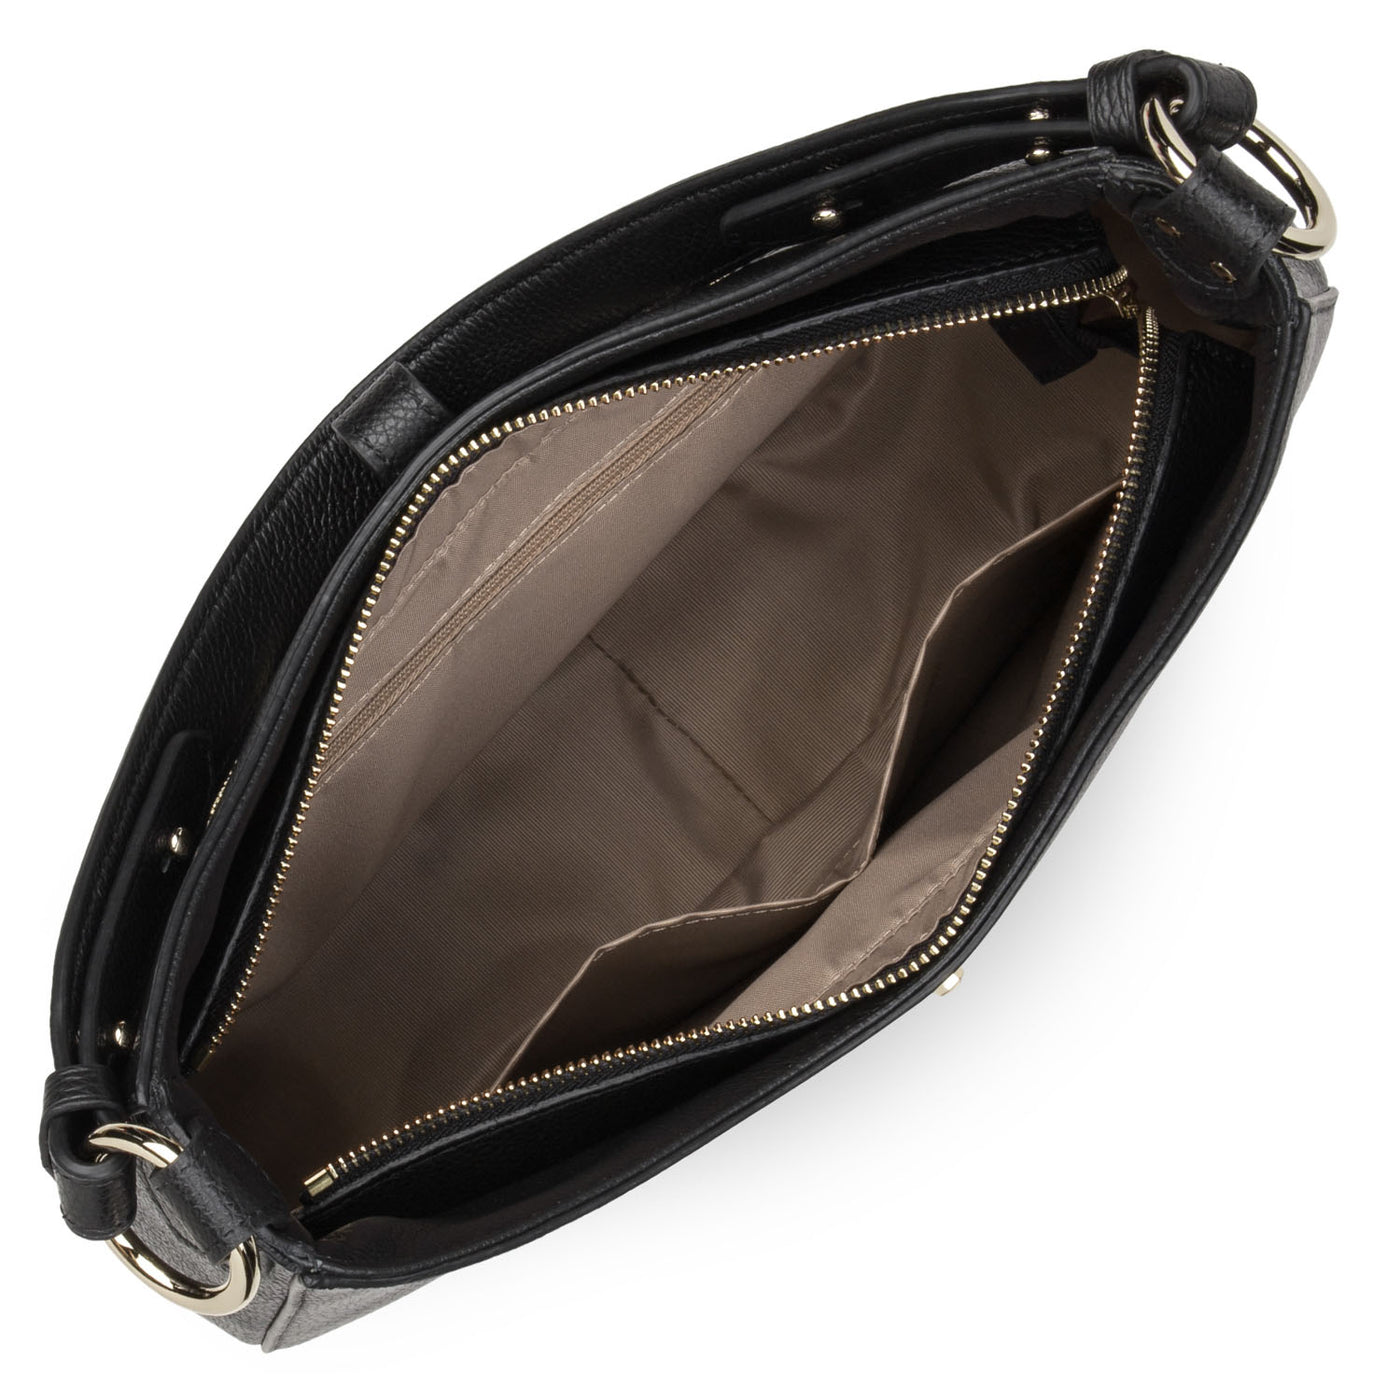 grand sac besace - foulonné milano #couleur_noir